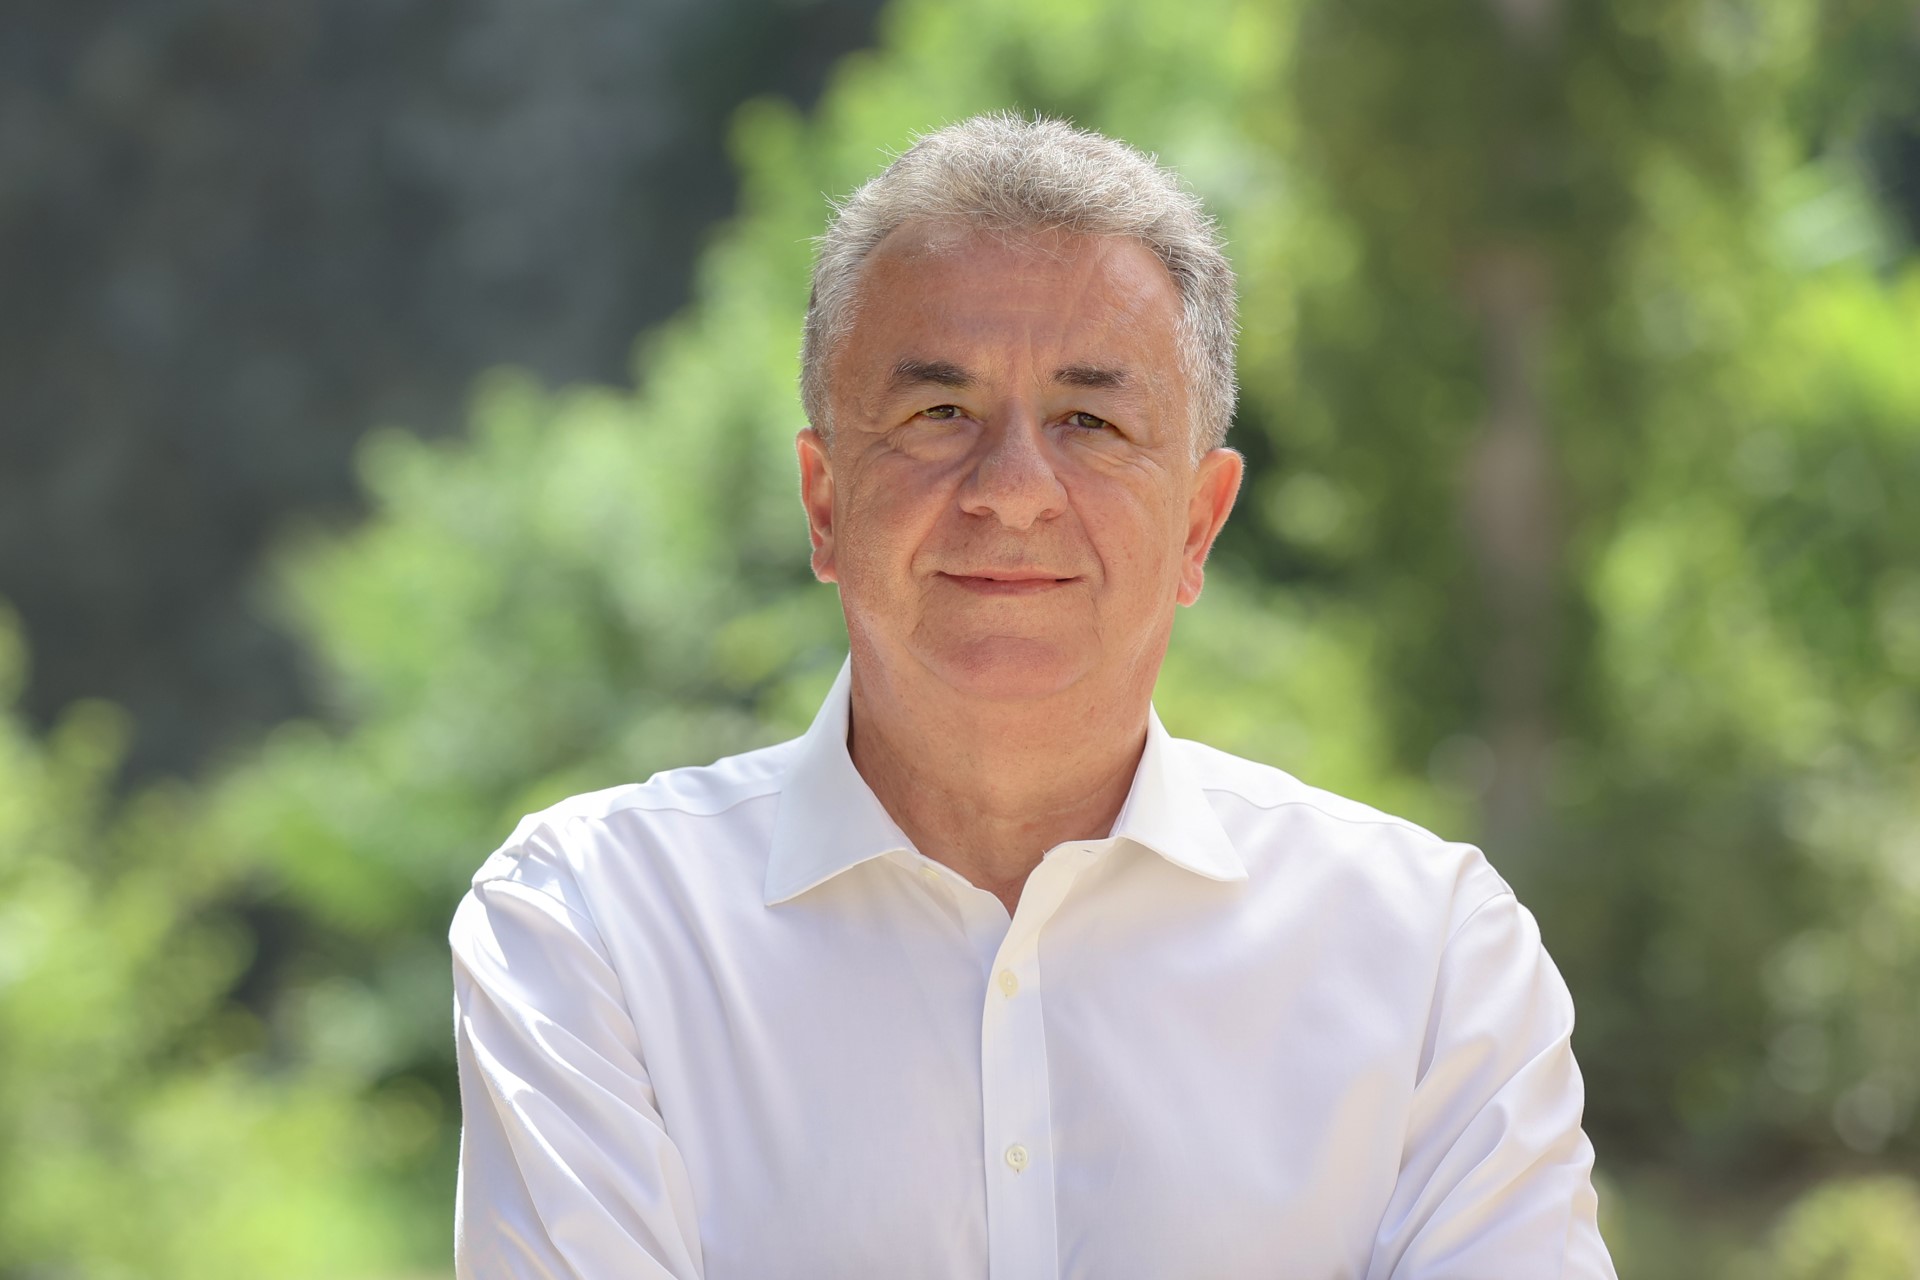 Σταύρος Αρναουτάκης: «Δεν κερδίζει ένας, όλοι μαζί είμαστε πιο δυνατοί»